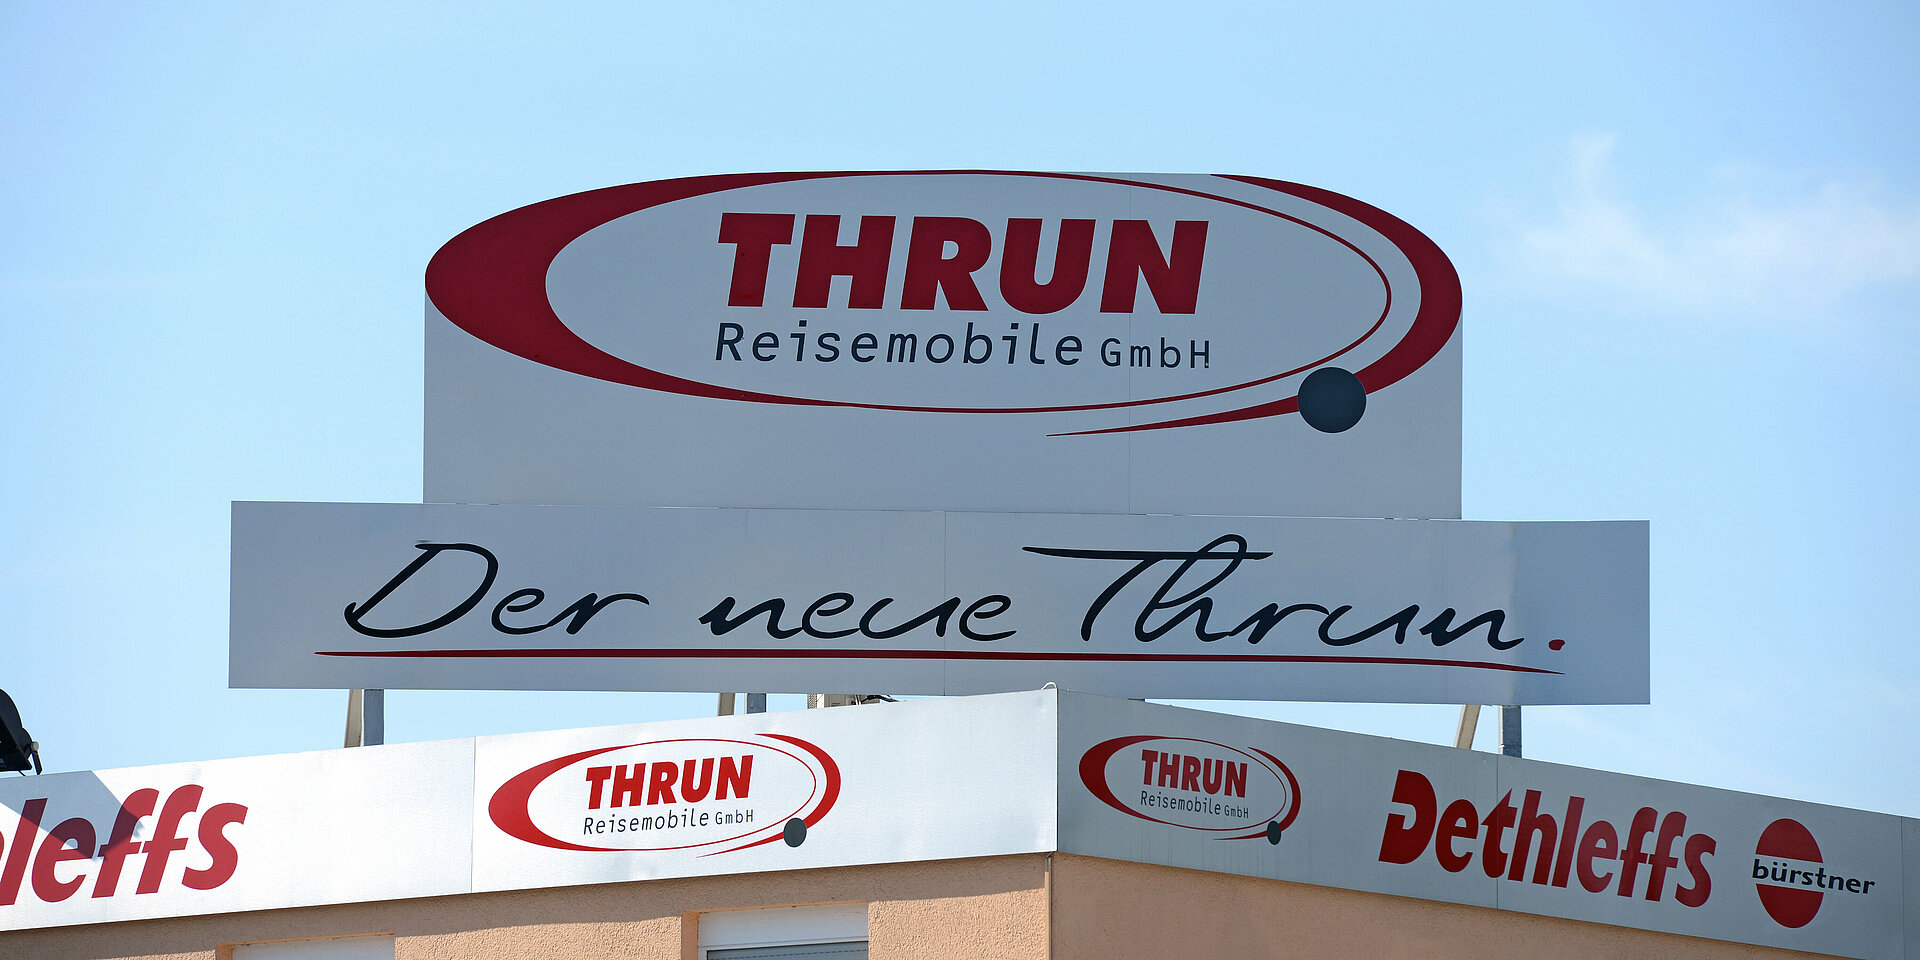 Anfahrt Thrun Reisemobile in Mülheim an der Ruhr